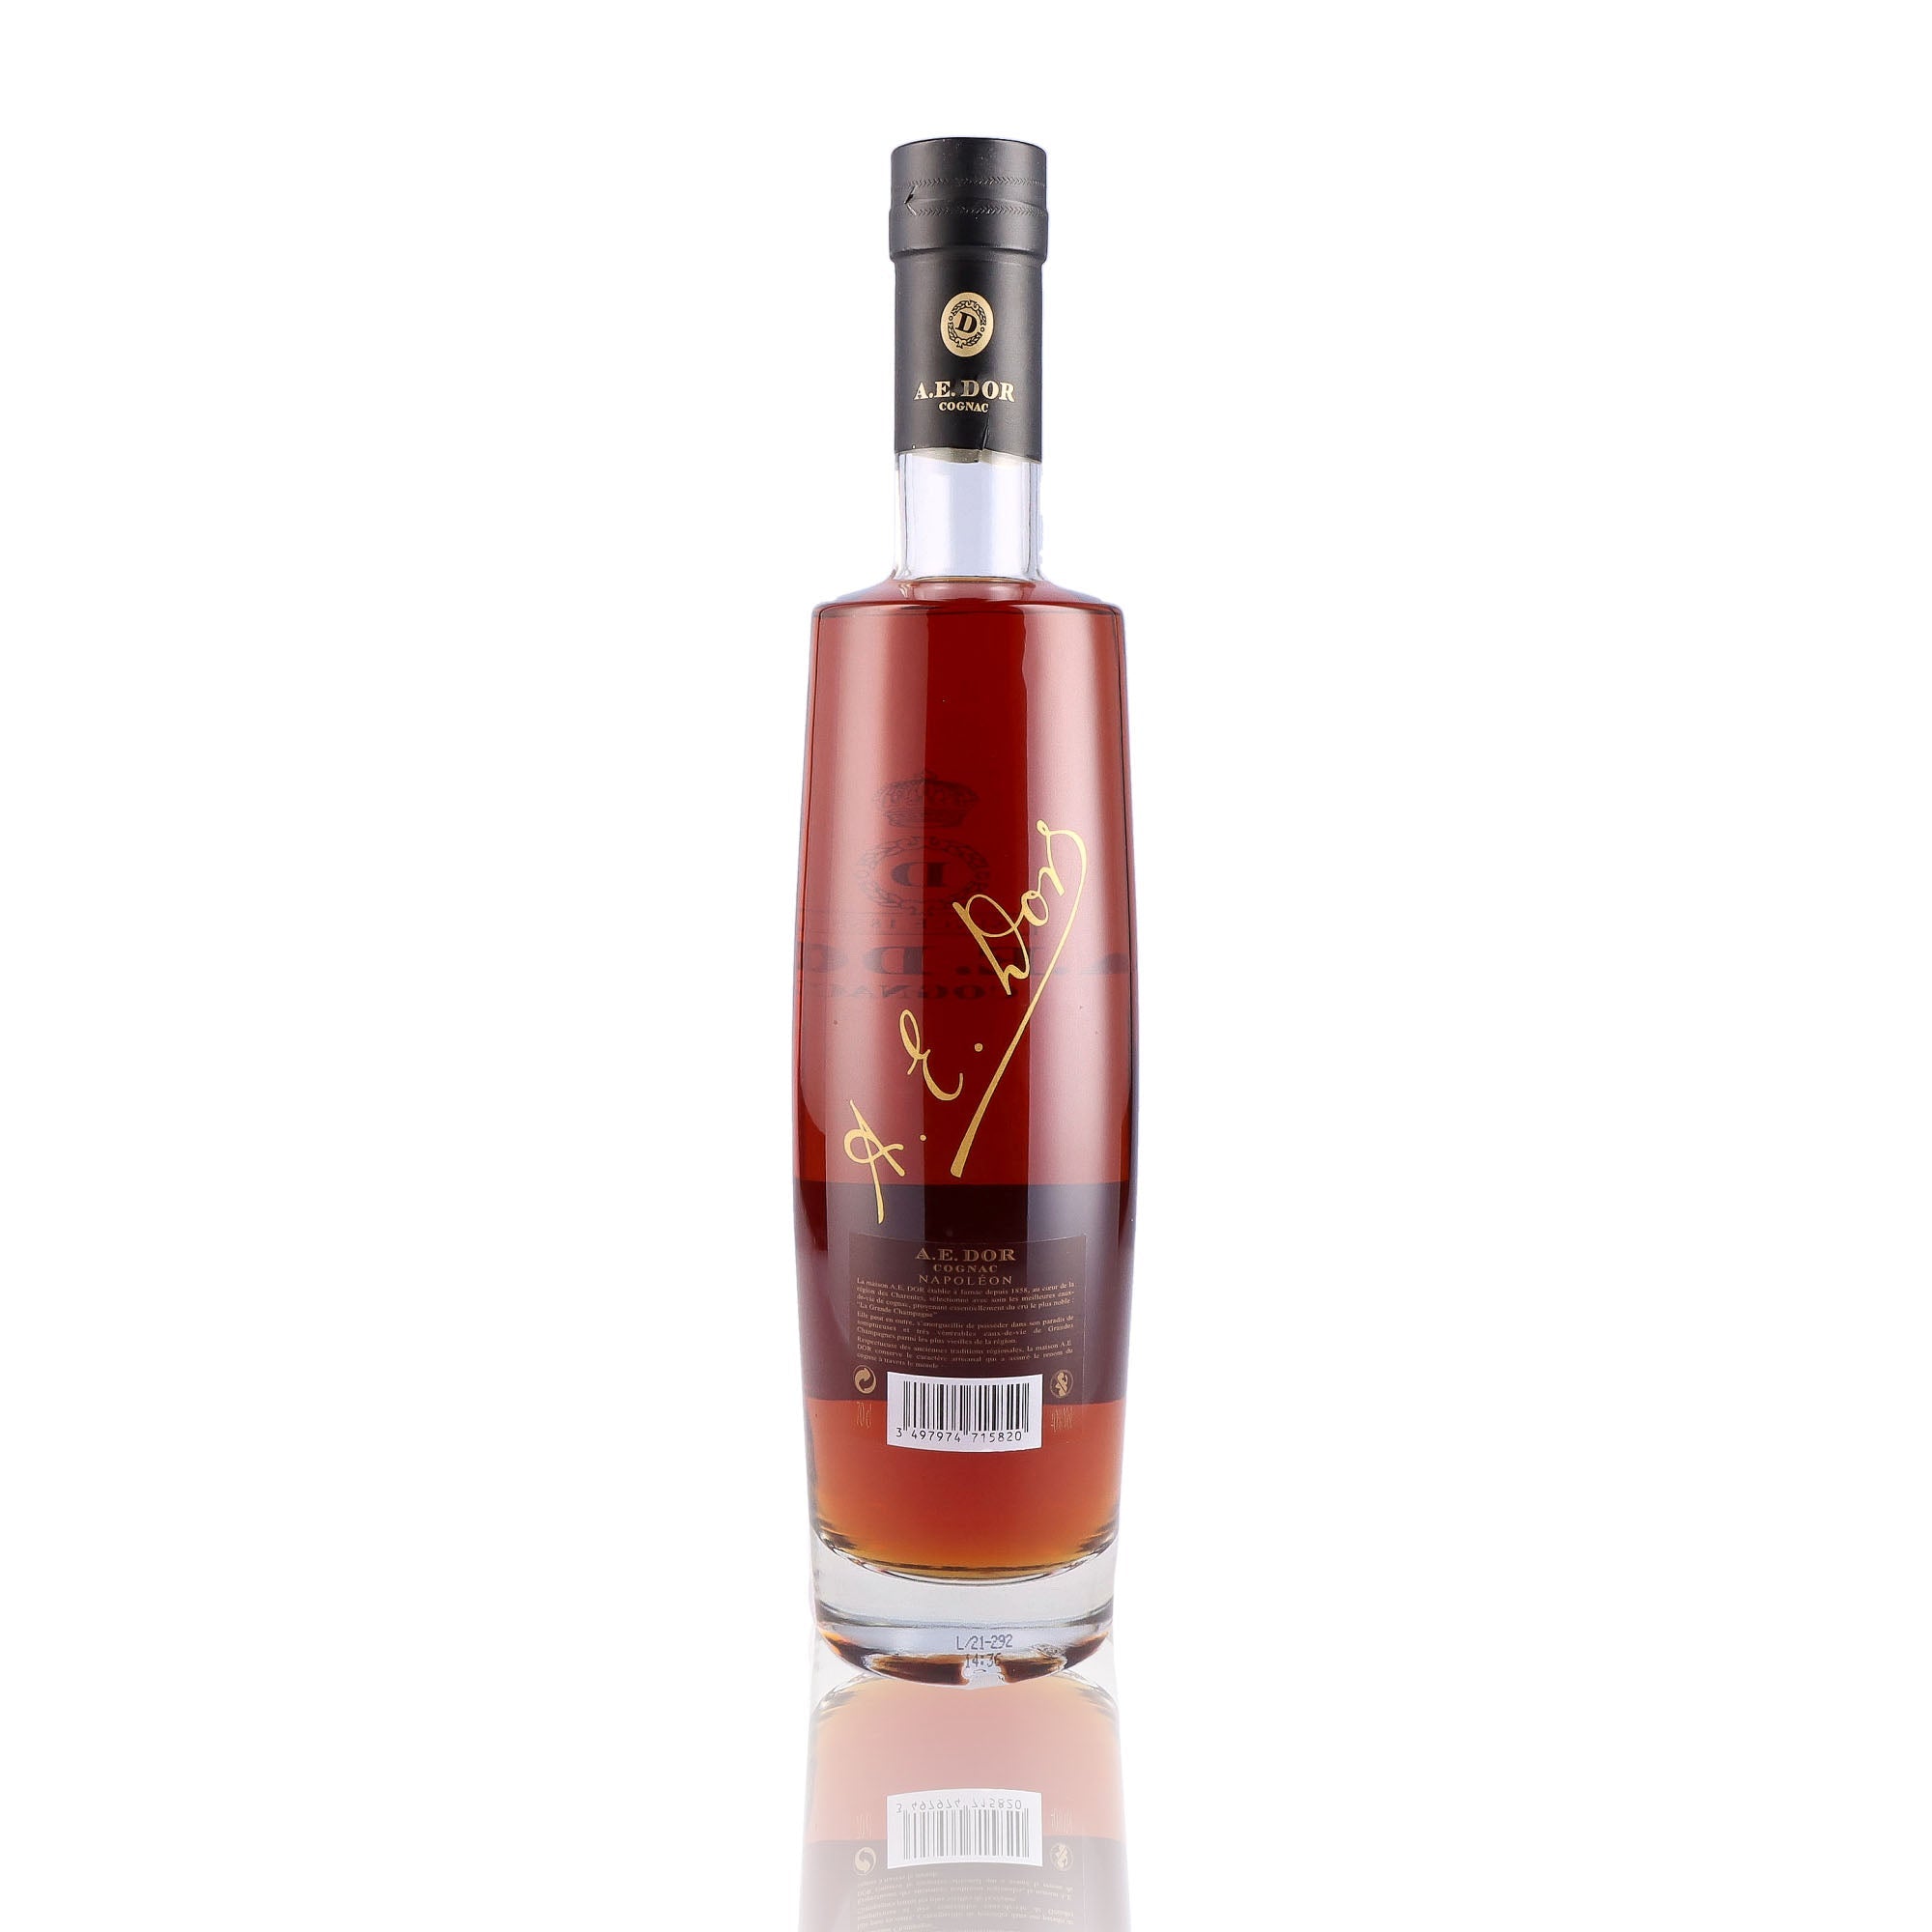 Une bouteille de Cognac, de la marque A.E DOR, nommée  Napoléon.